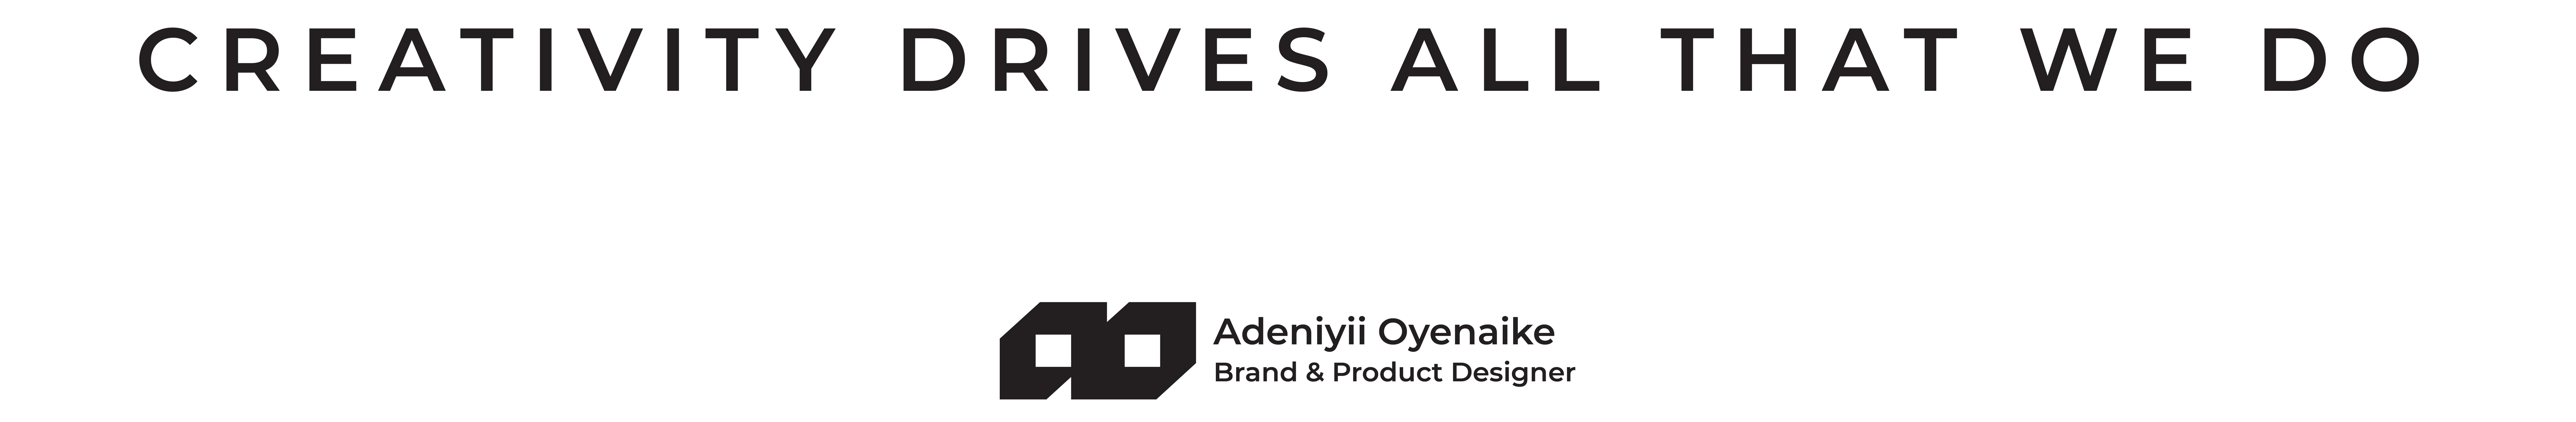 Adeniyii Oyenaike's profile banner